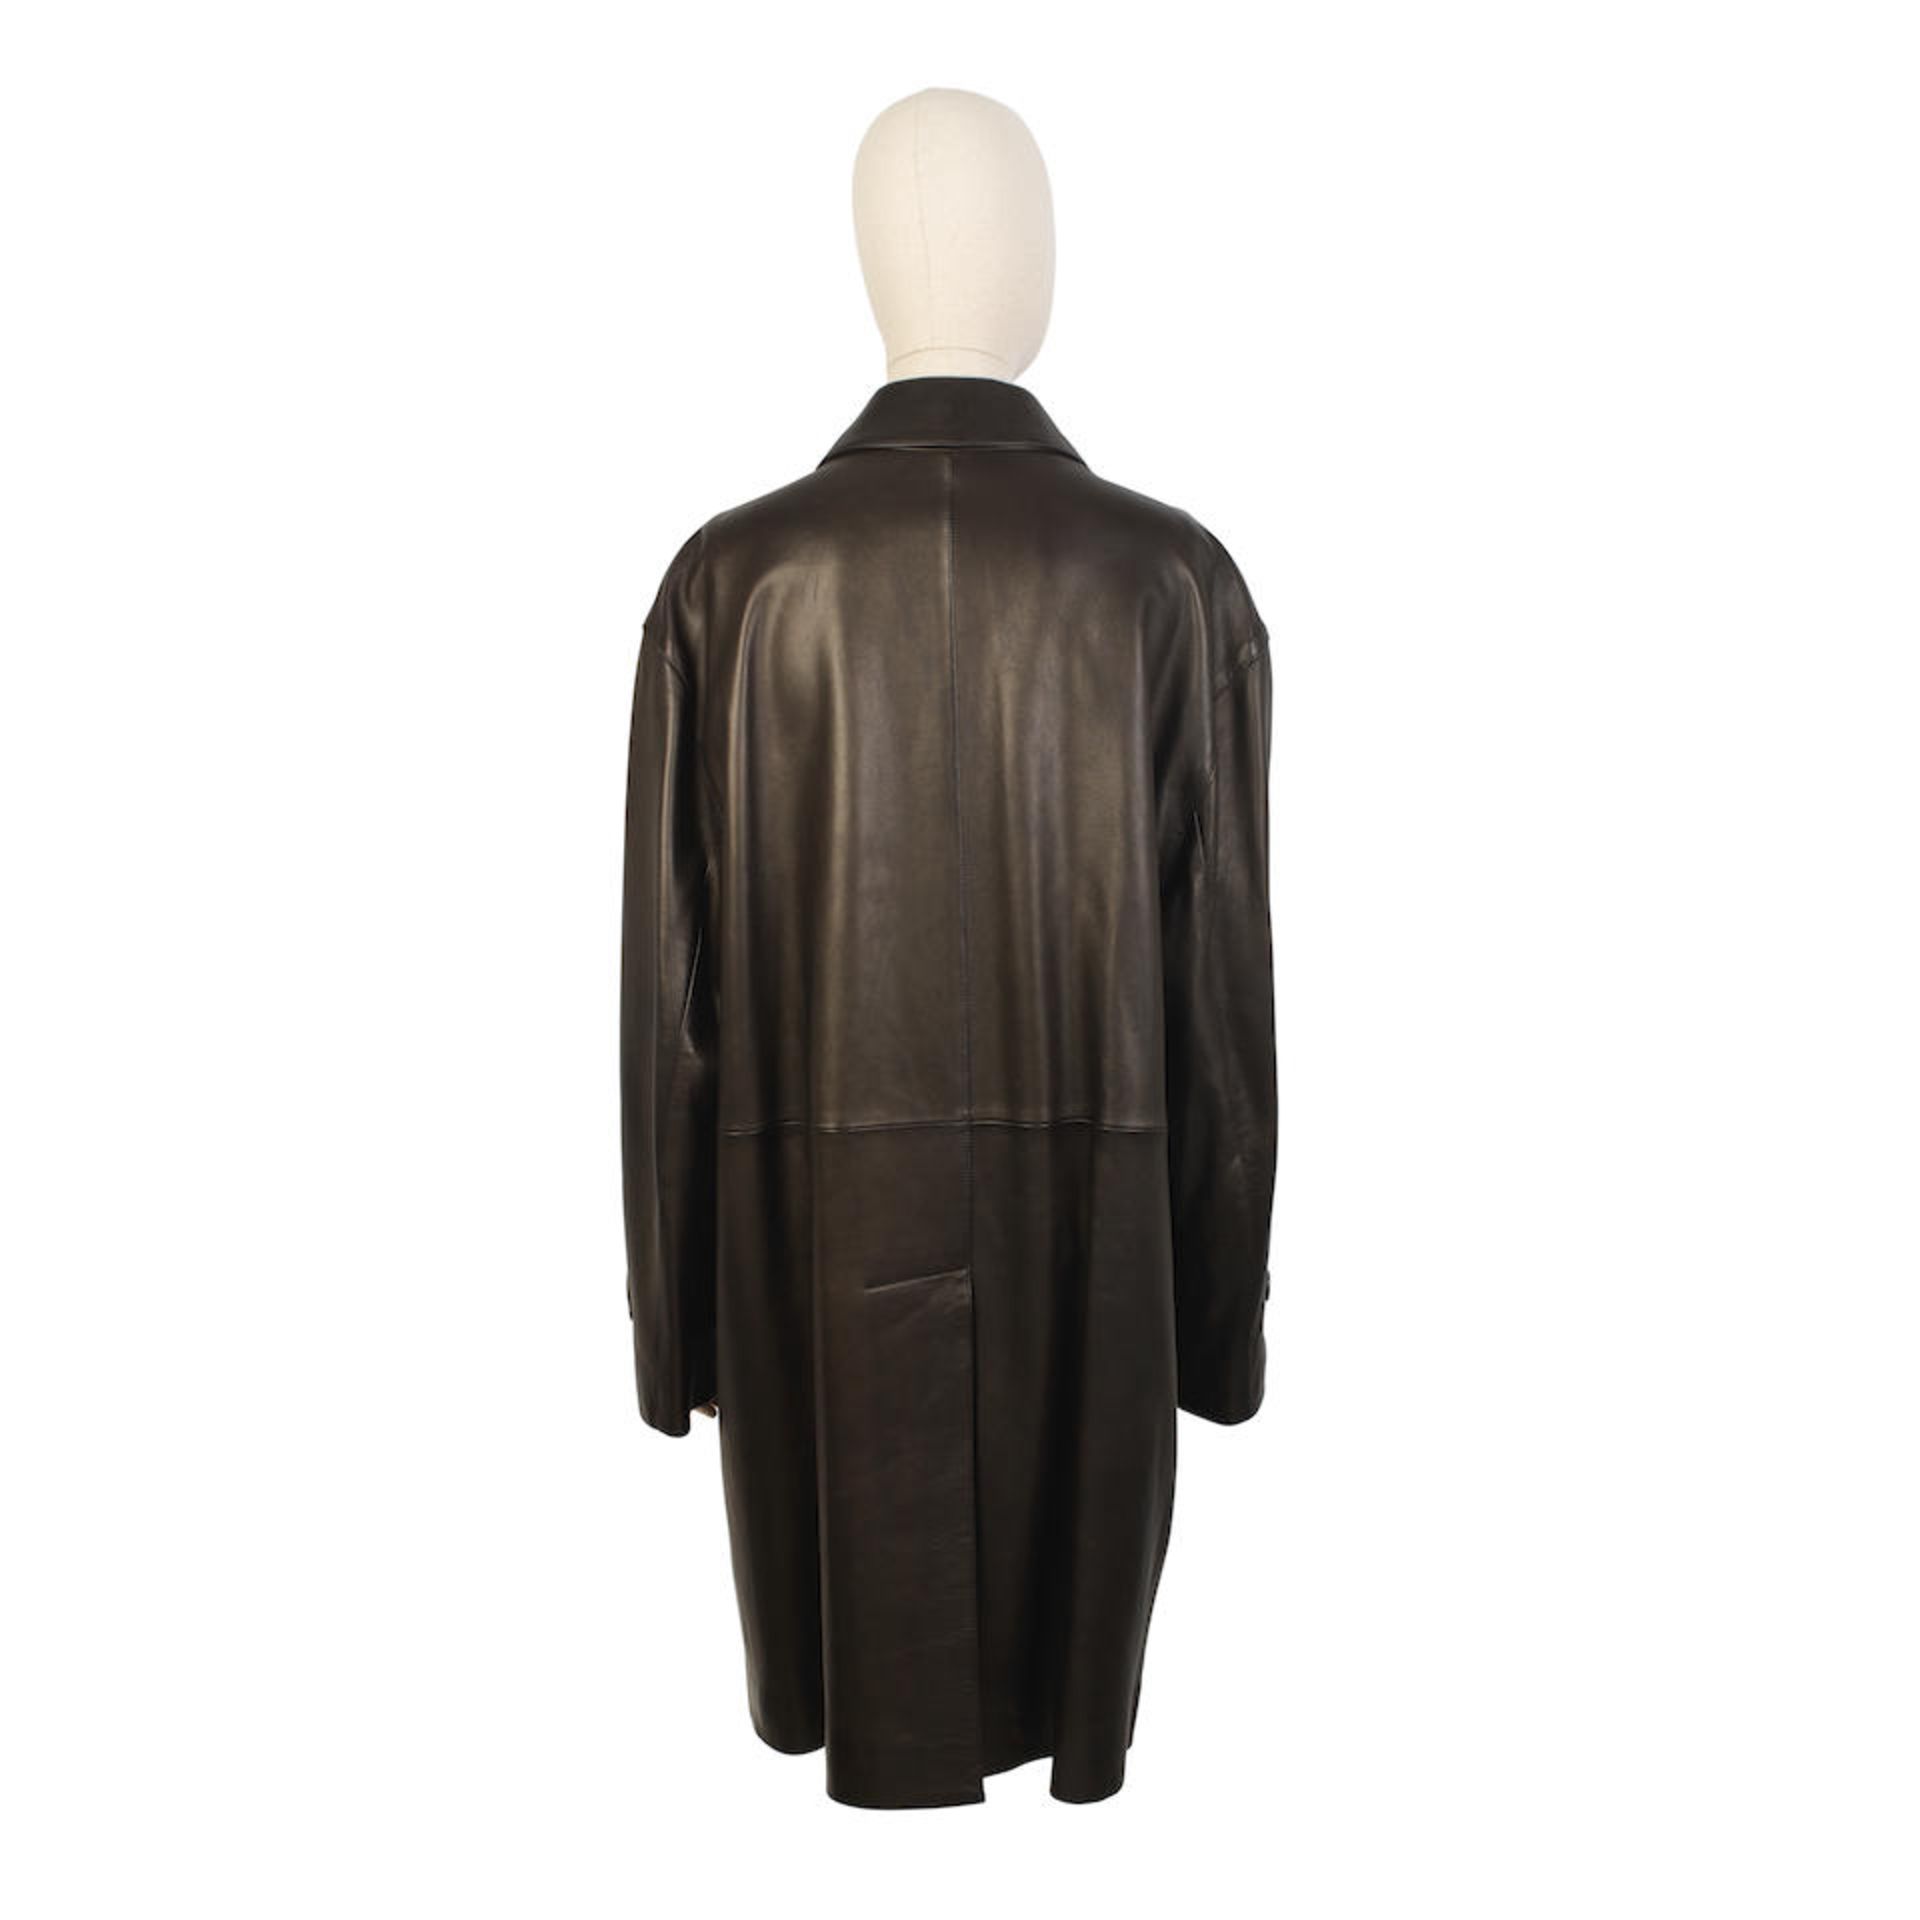 Hermès: a Men's Brown Long Leather Jacket 2000s (includes dust jacket) - Bild 2 aus 2